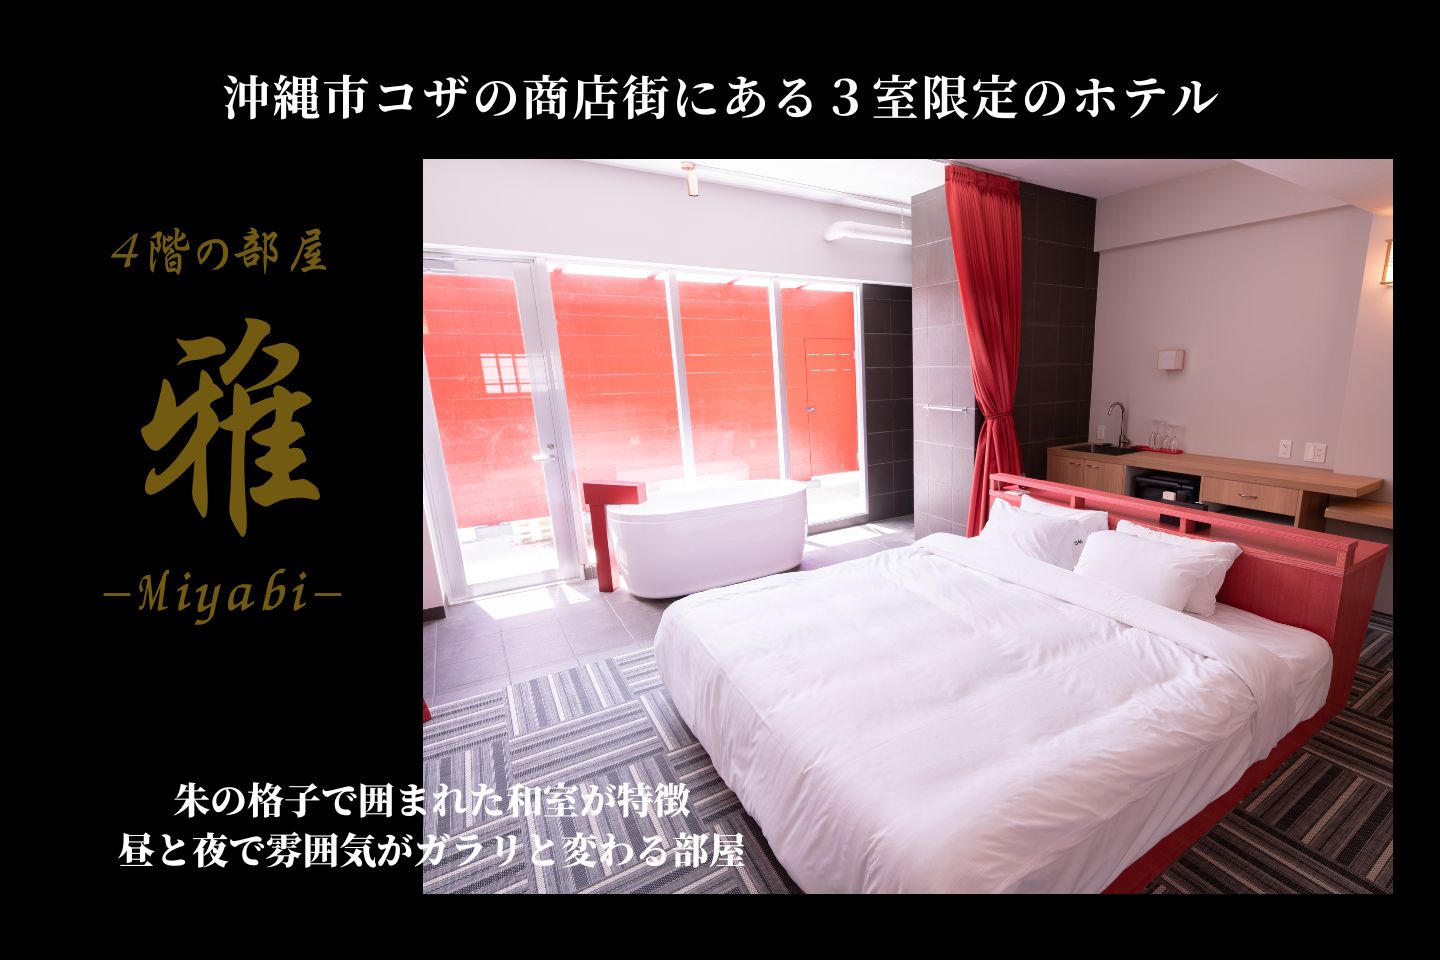 ４階【雅-MIYABI-】江戸時代の遊廓風の朱の格子で囲われた和室が特徴的で昼と夜で雰囲気がガラリと変わる１番人気の部屋